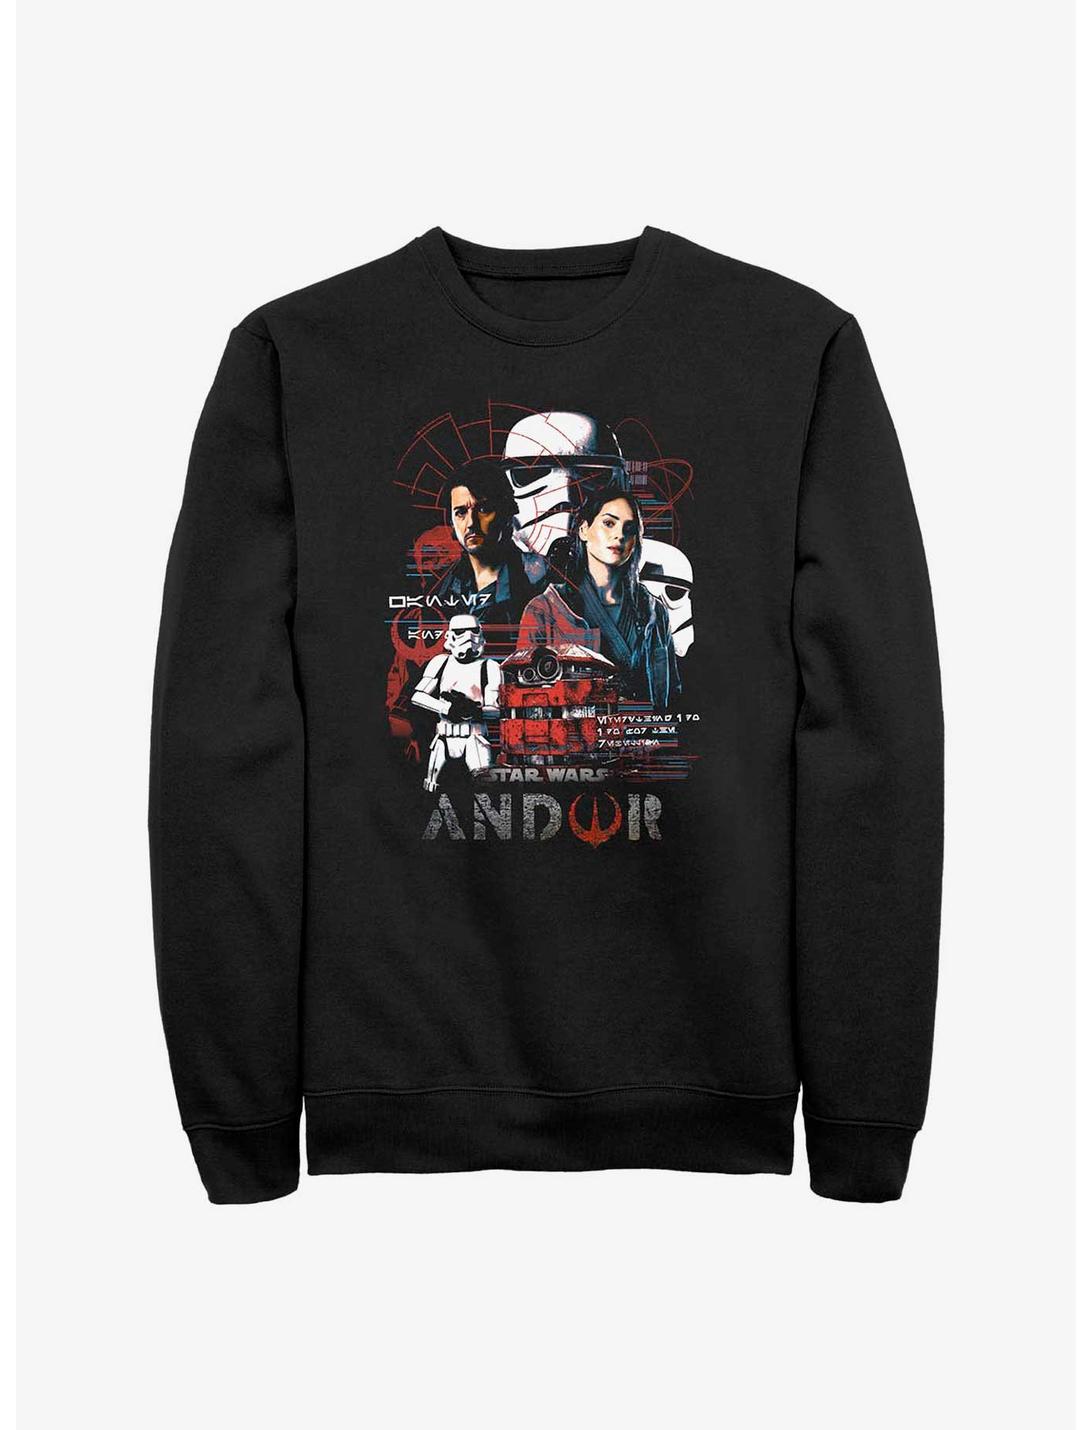 Star Wars Andor Information Sweatshirt, BLACK, hi-res